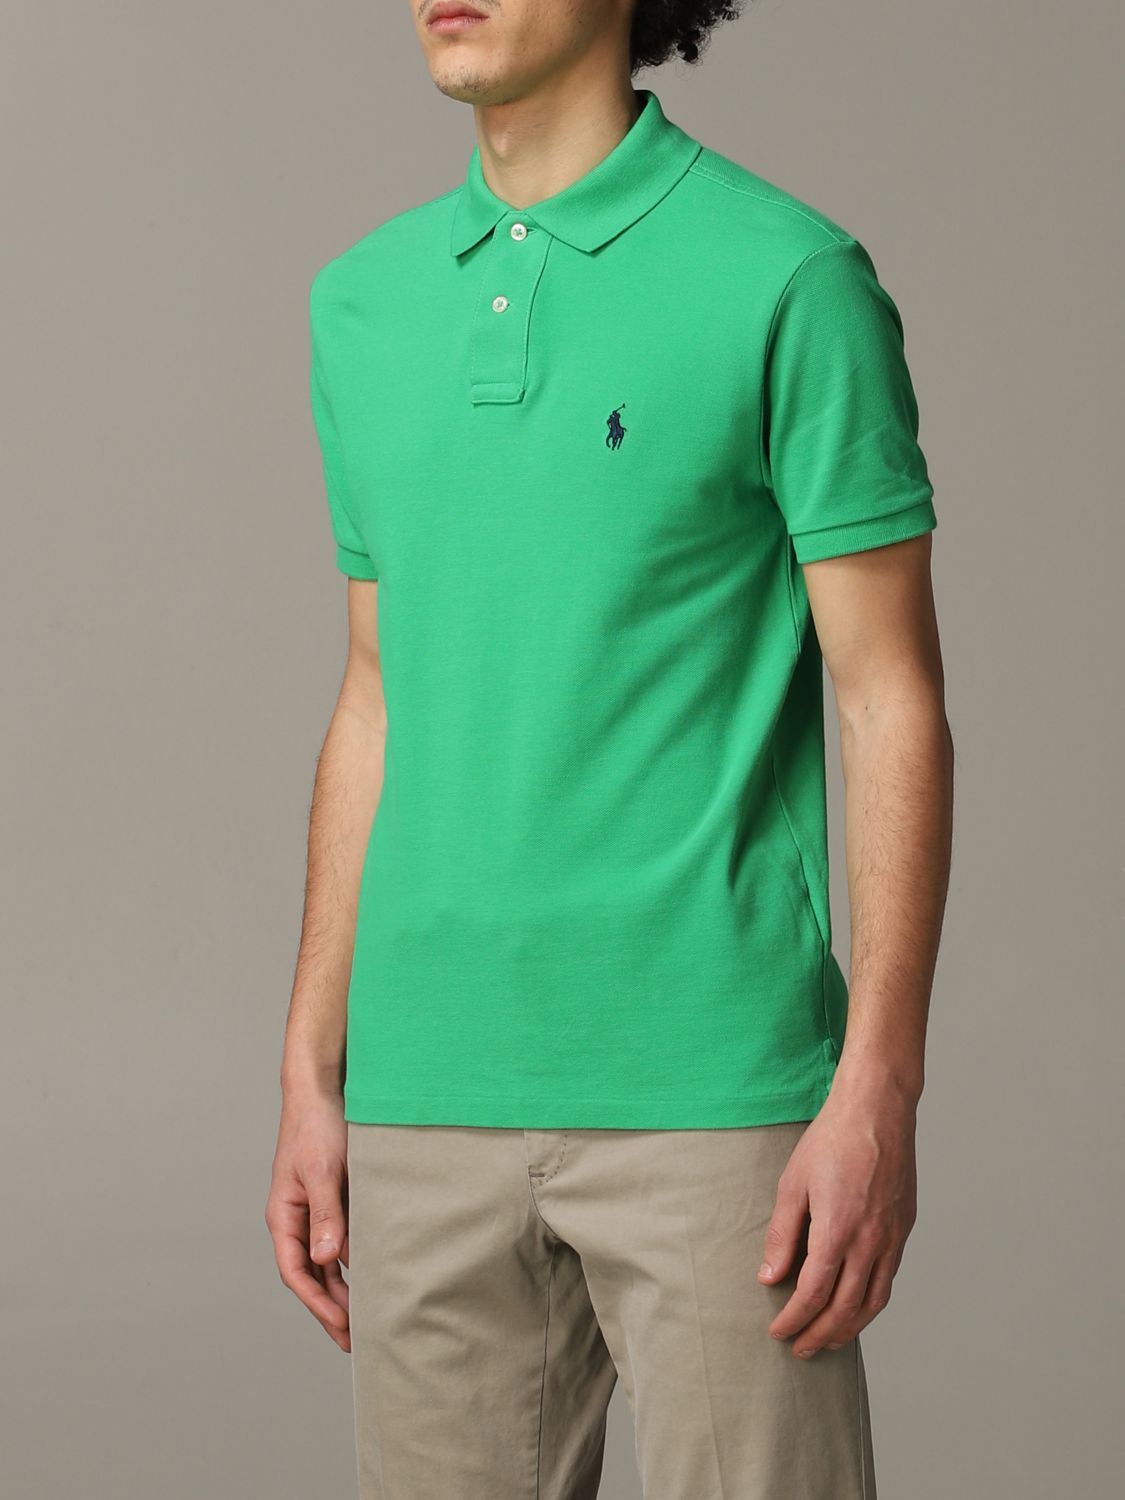 POLO RALPH LAUREN: T-shirt men - Forest Green | Polo Shirt Polo Ralph ...